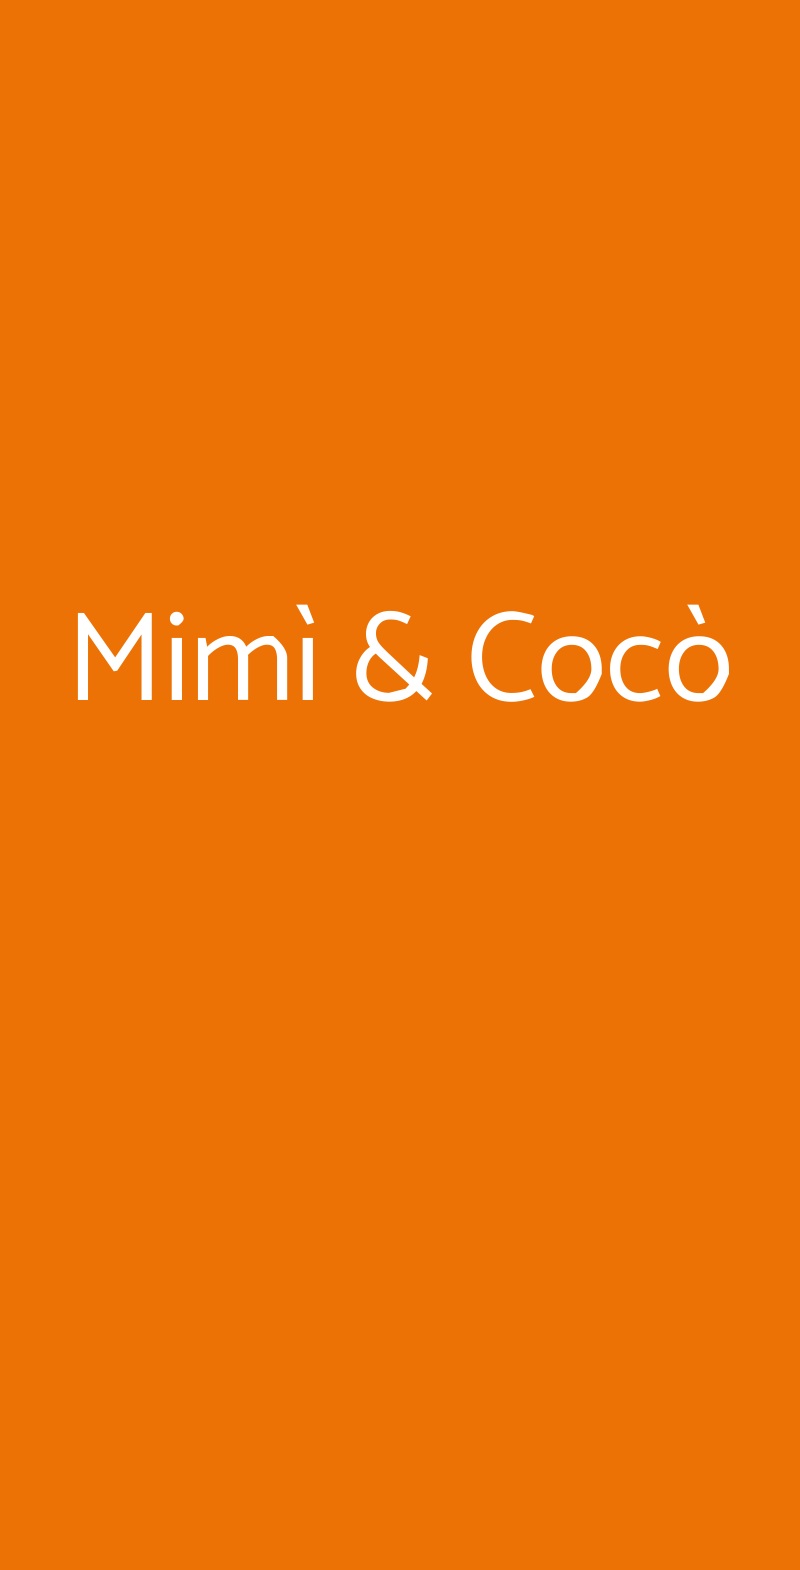 Mimì & Cocò Firenze menù 1 pagina